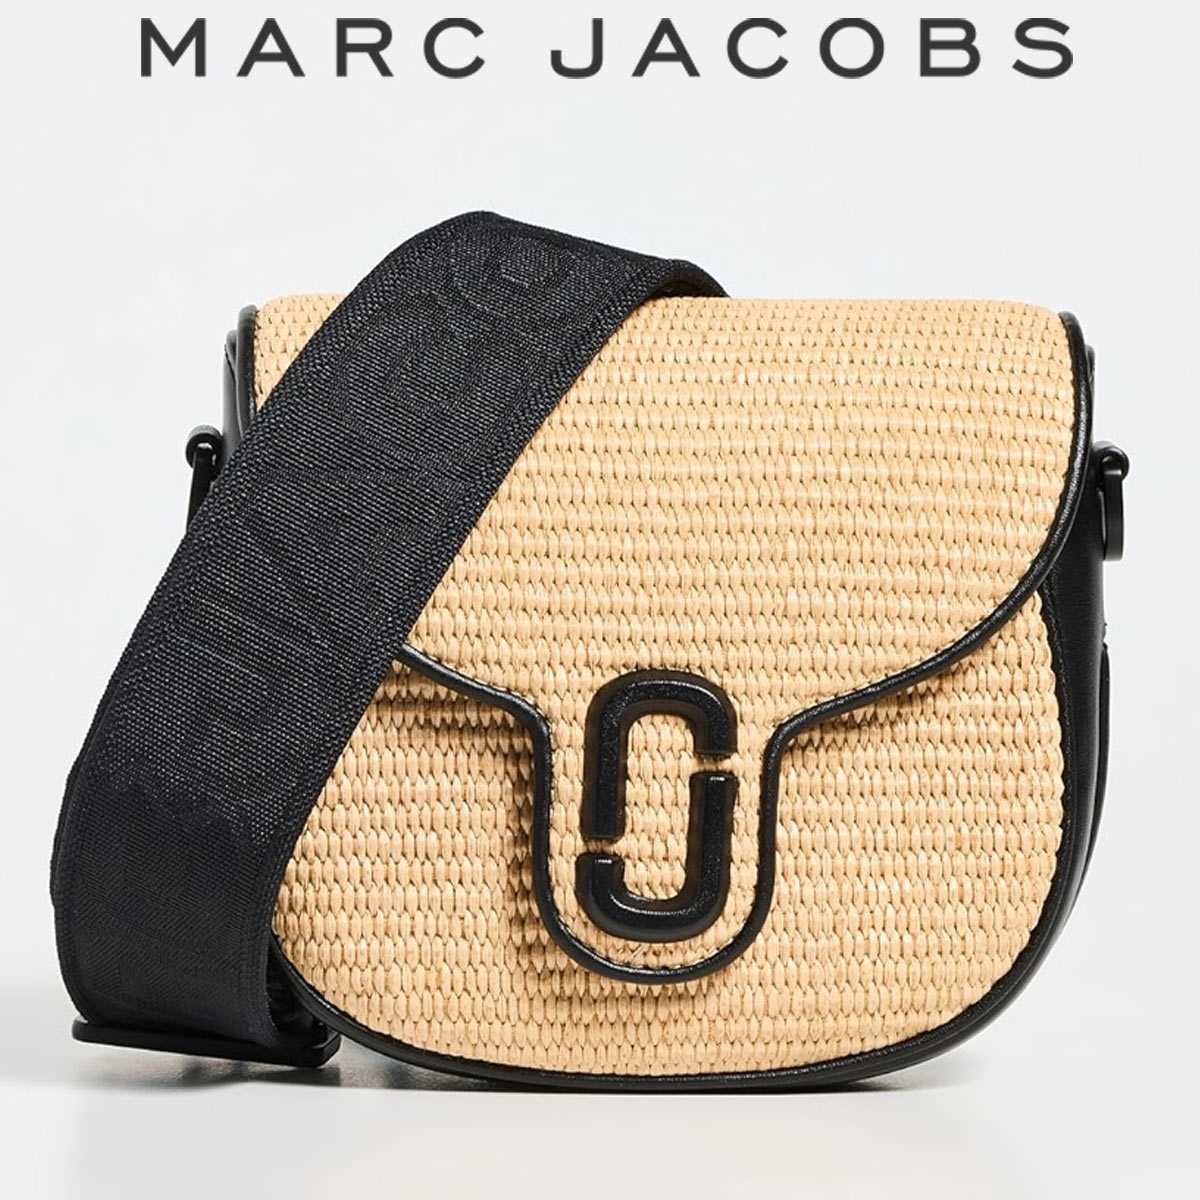 マークジェイコブス バック かごバック レディース ショルダー ブランド 小さめ 夏バック アウトレットではない Marc Jacobs